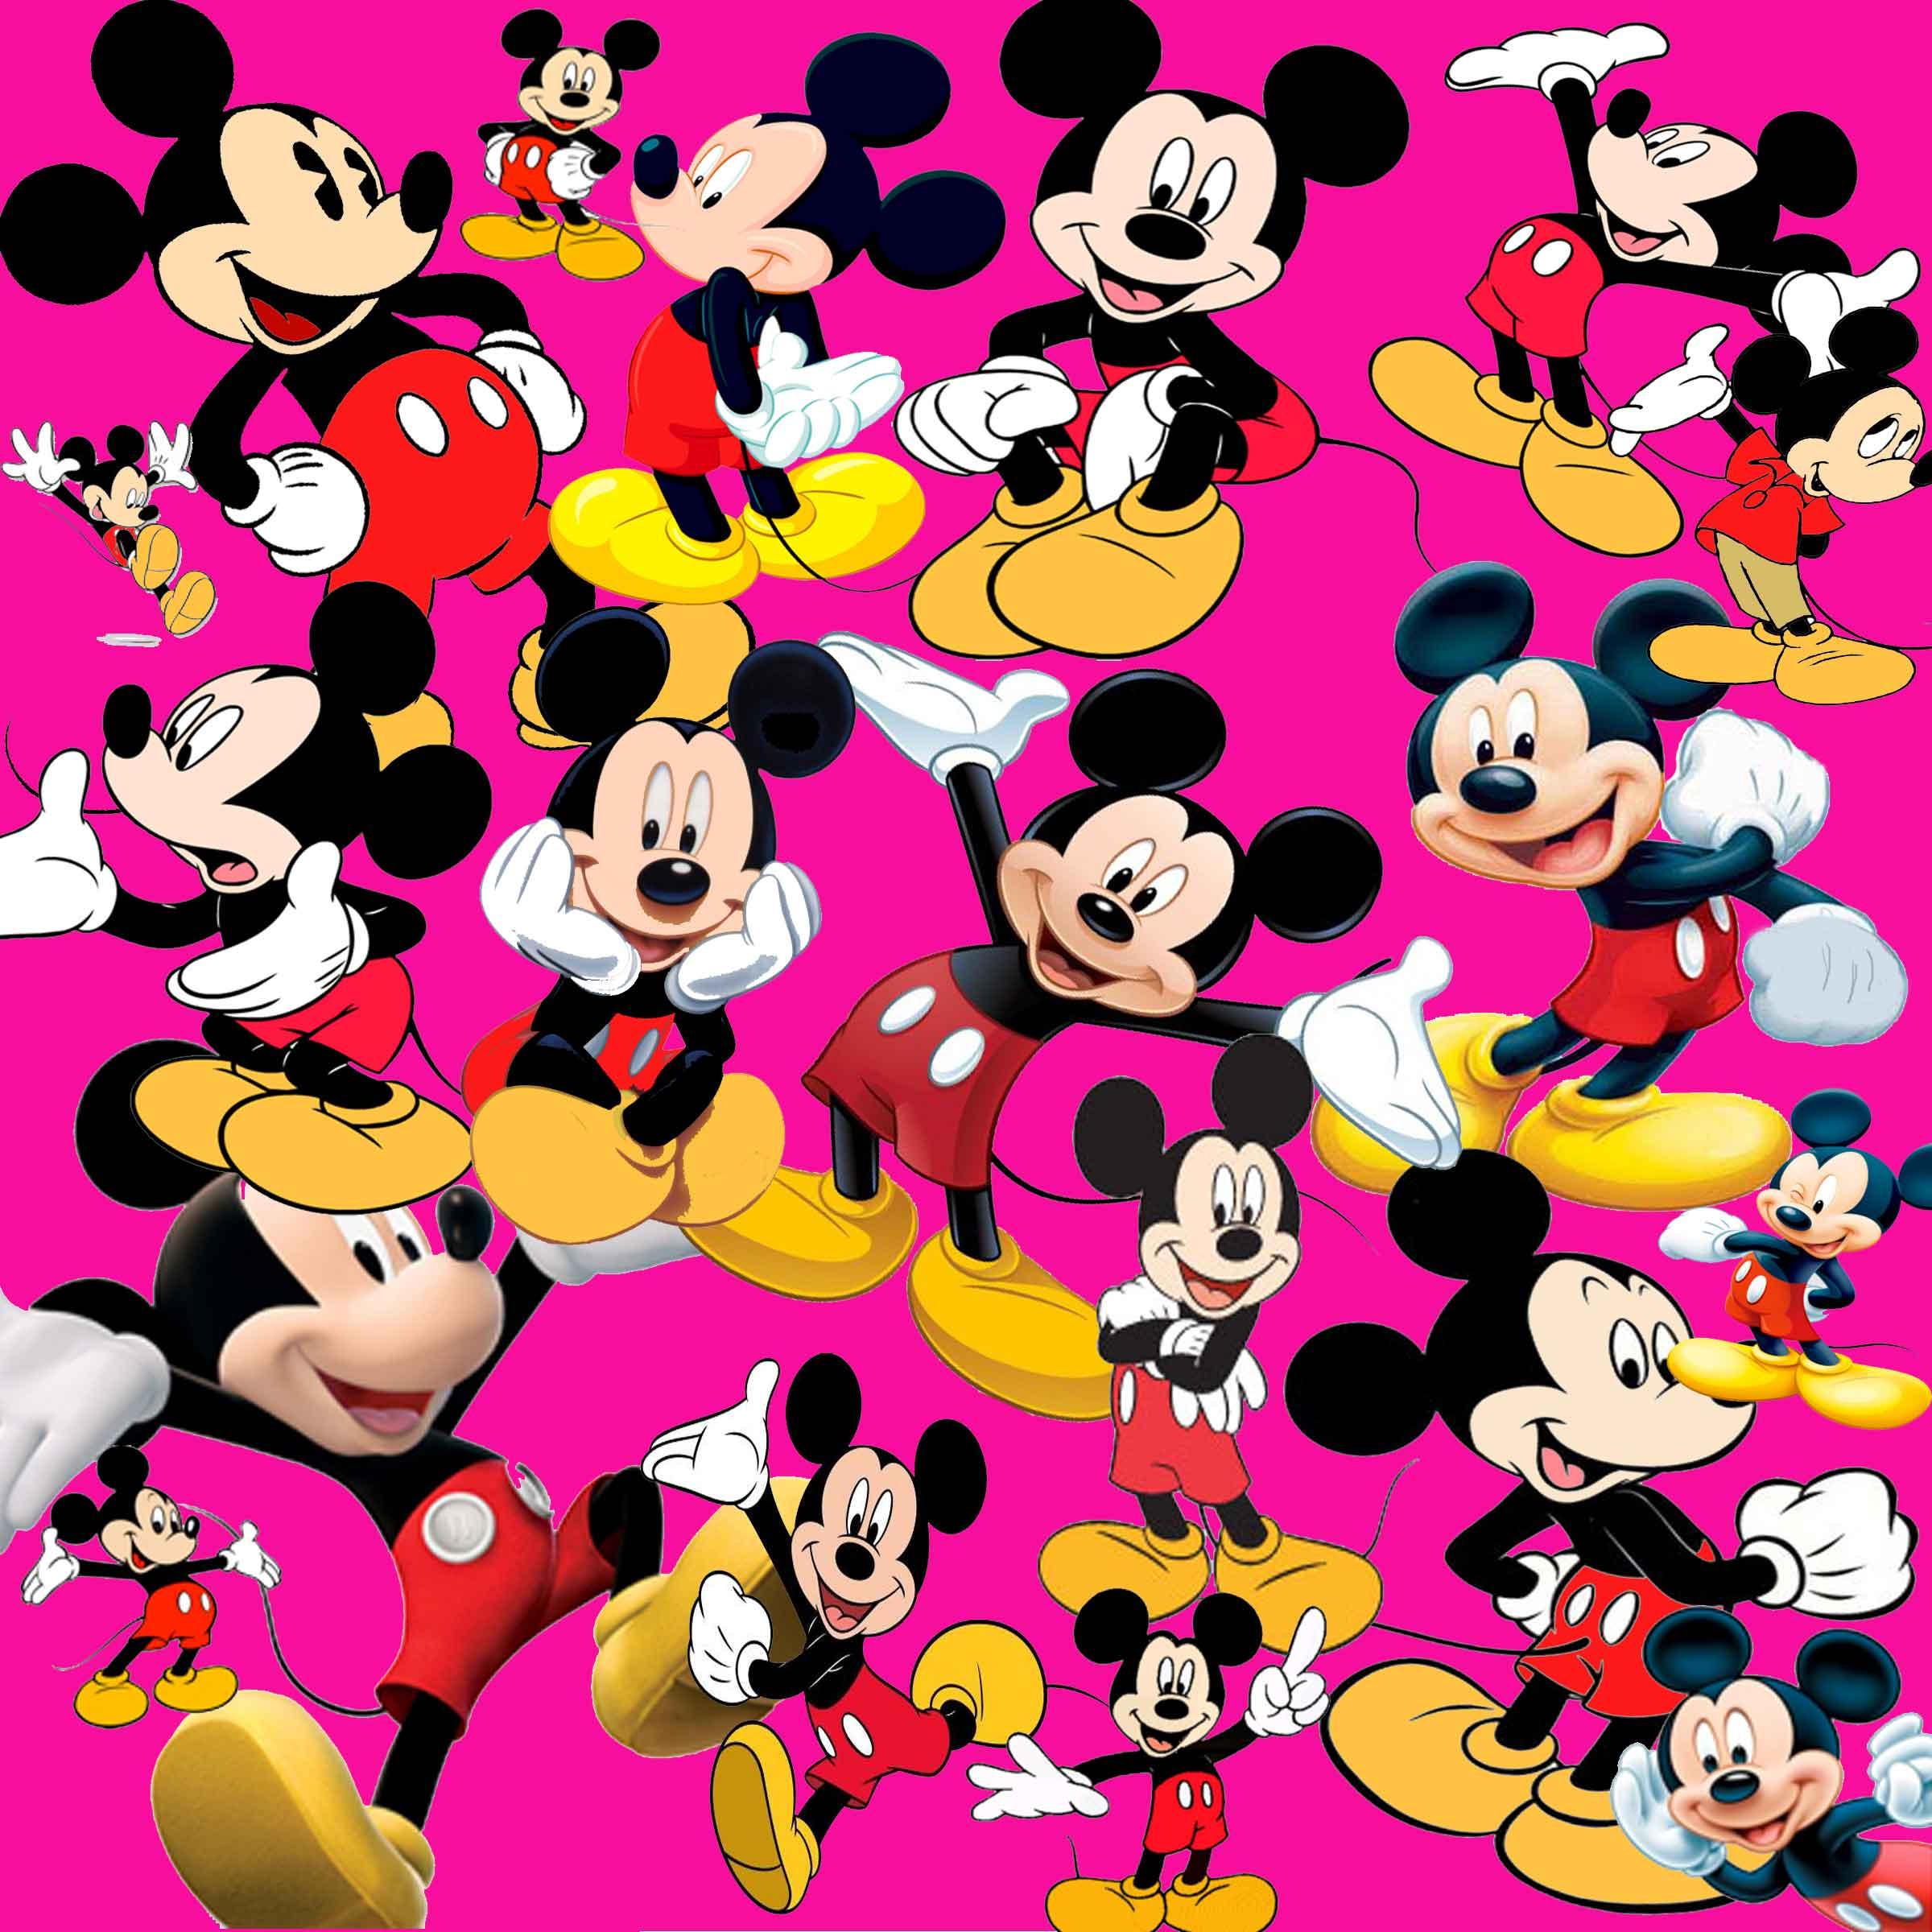 2400 x 2400 · jpeg - Mickey Mouse Cartoon wallpapers | PixelsTalk